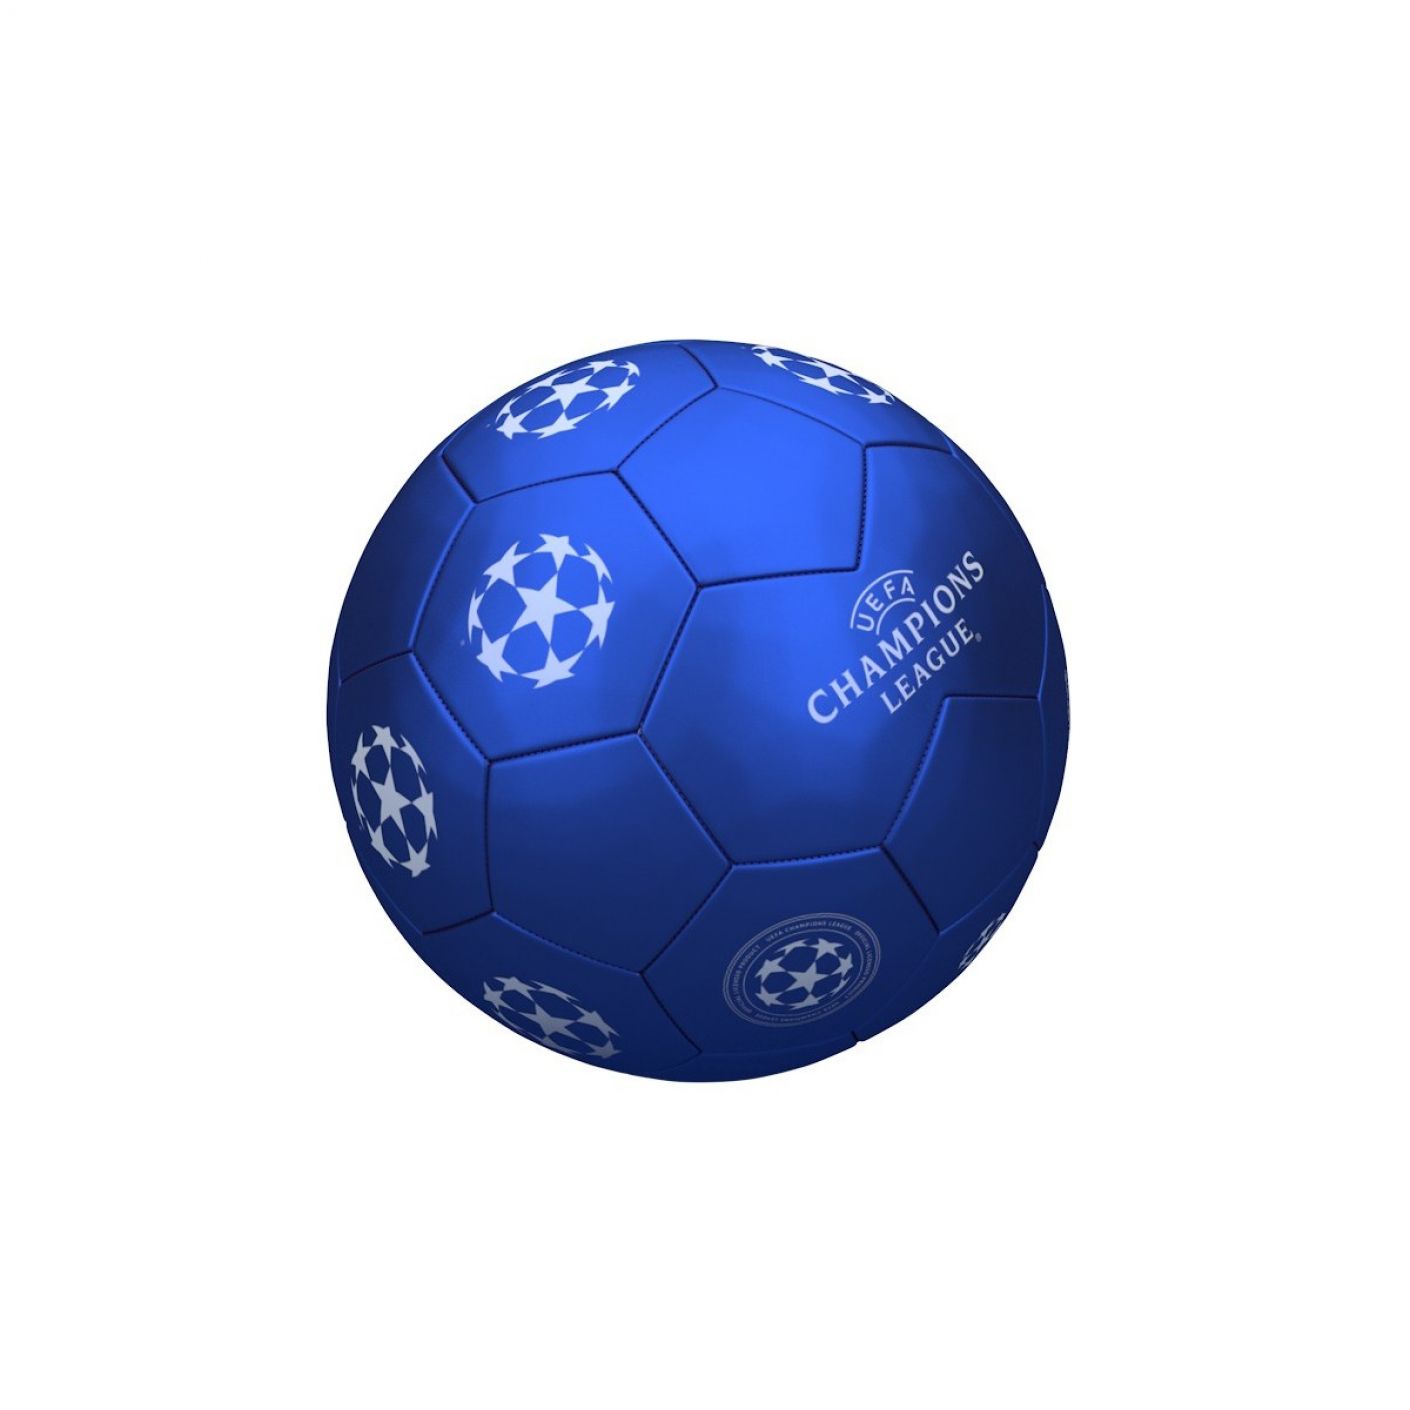 Mondo Pallone Calcio Champions League Taglia 5